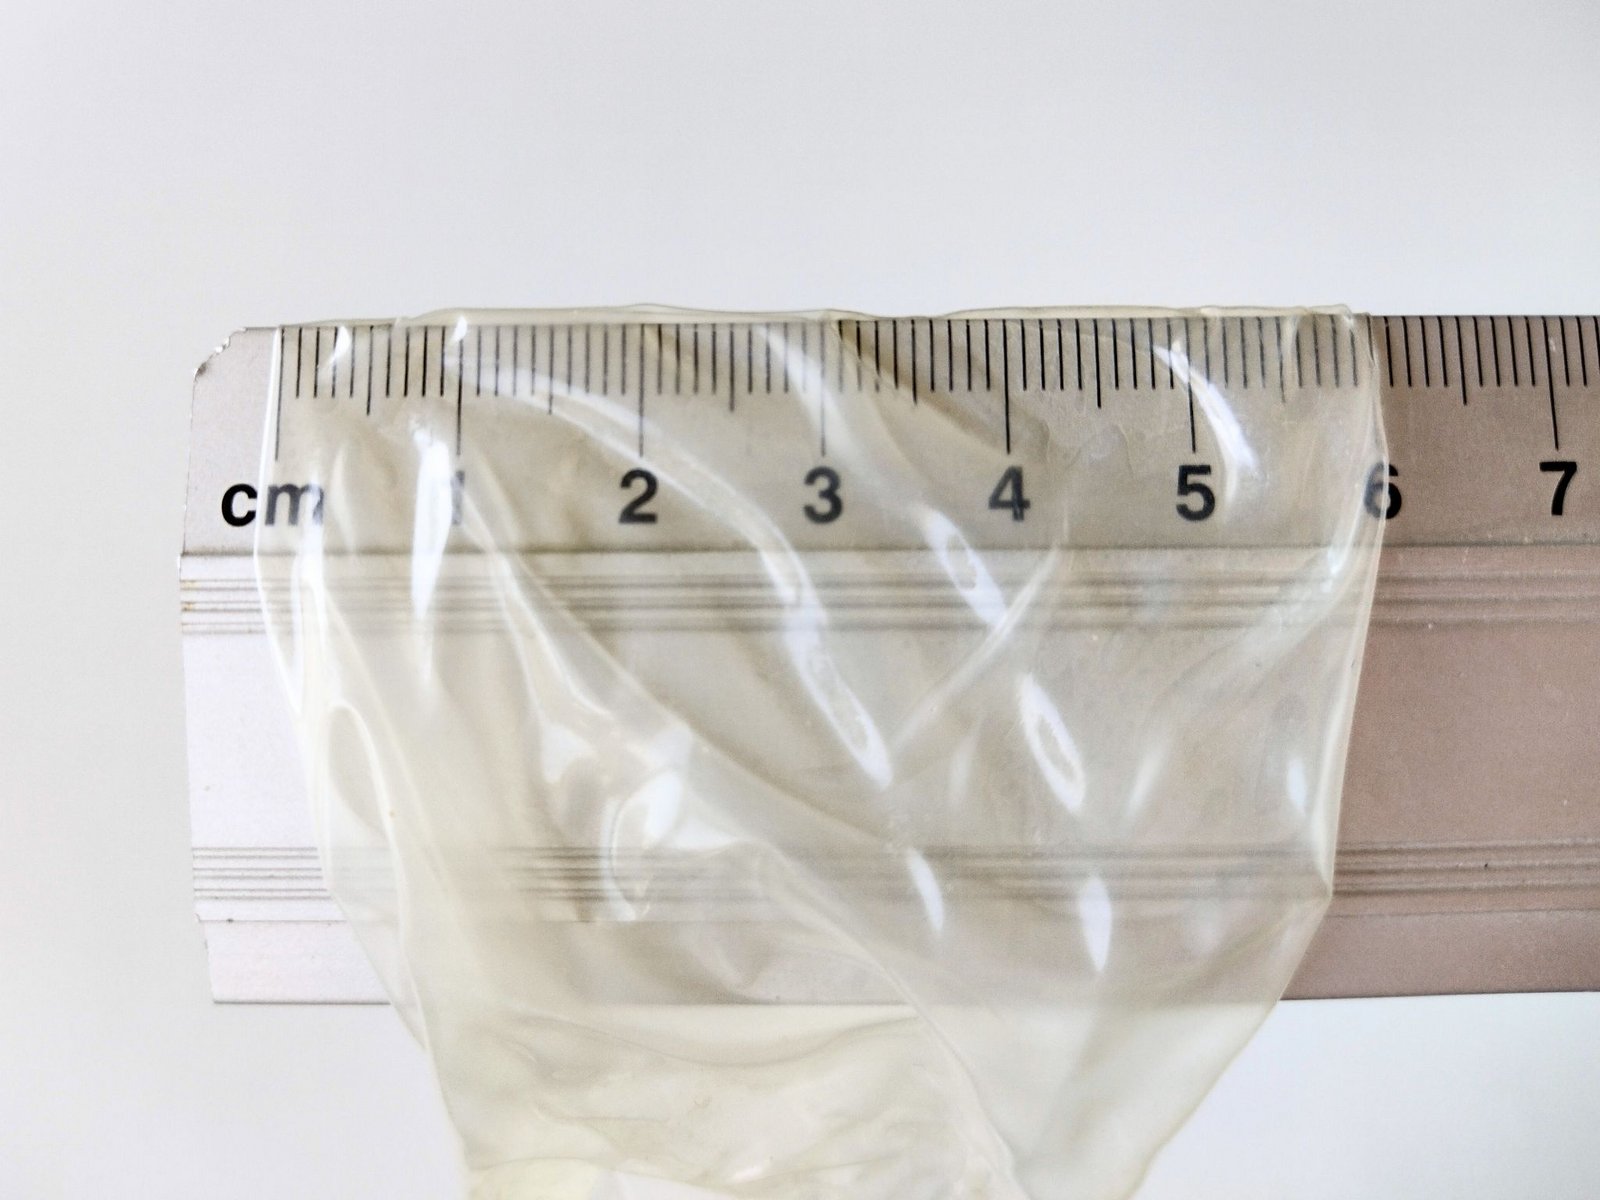 Lățimea nominală a unui prezervativ măsurată cu o riglă